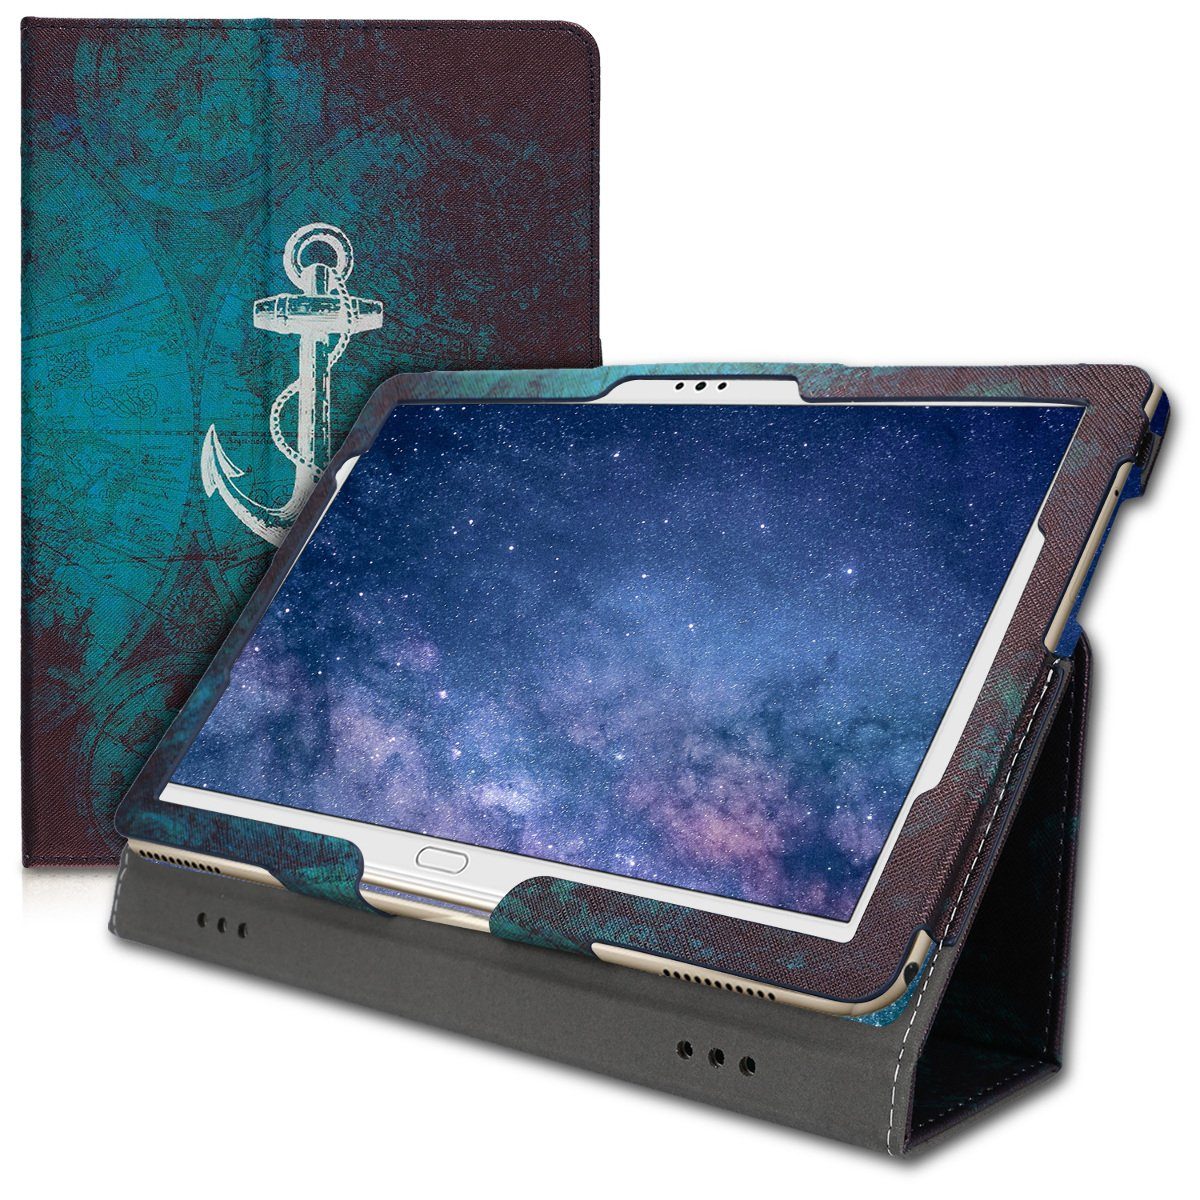 kwmobile Tablet-Hülle, Hülle für Huawei MediaPad M5 Lite 10 - Slim Tablet  Cover Case Schutzhülle mit Ständer - Anker Landkarte Design